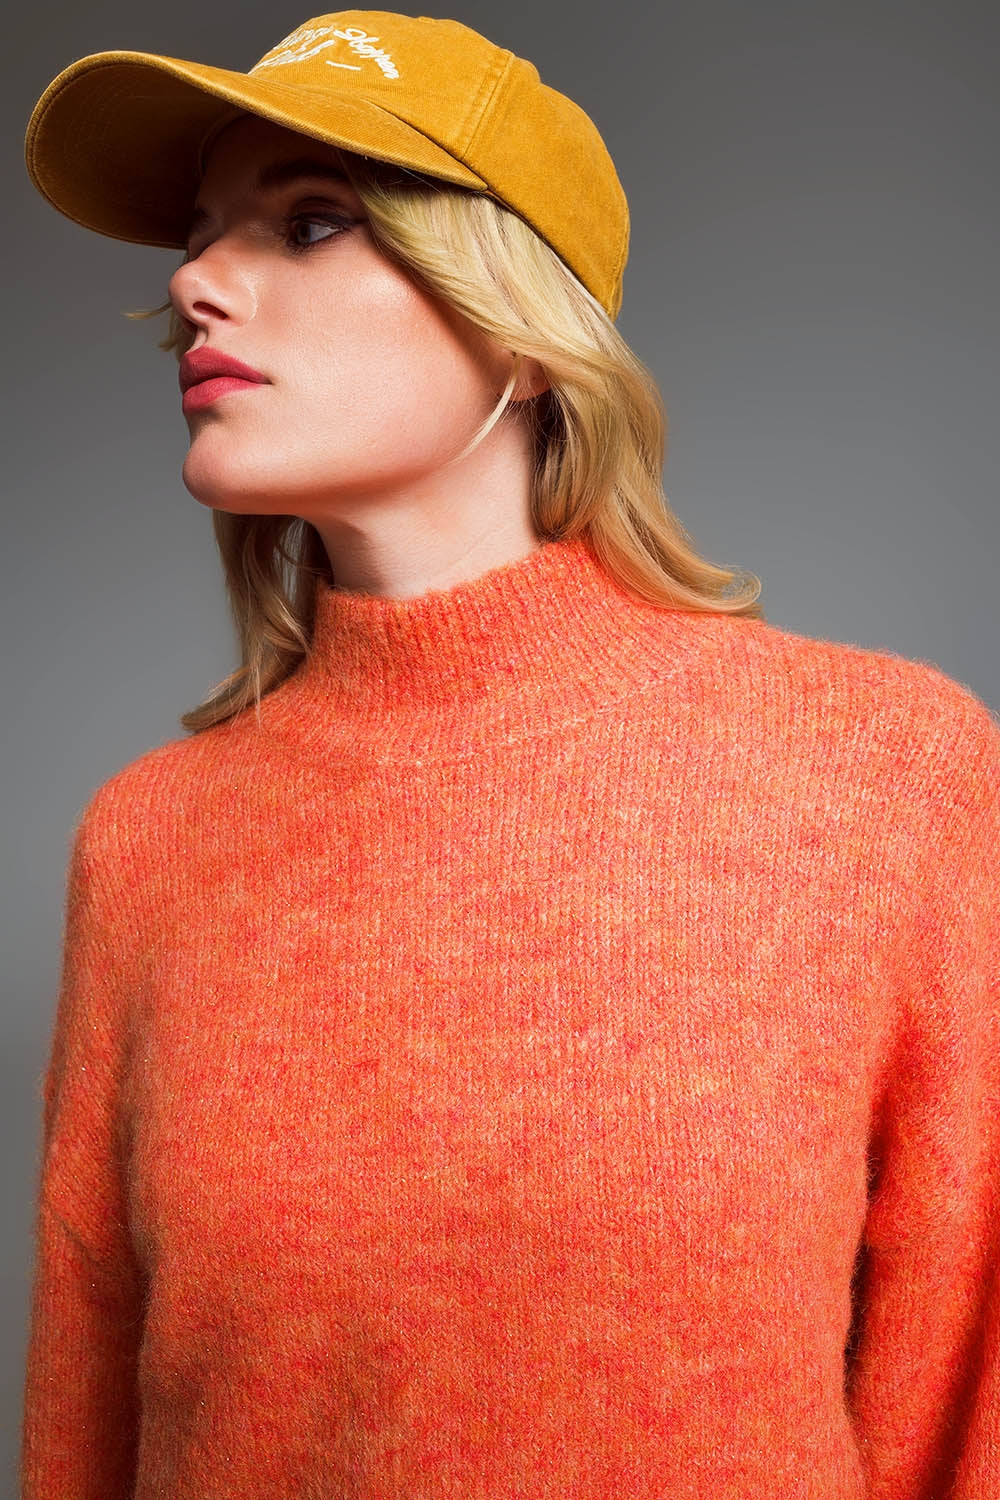 Maglione con colletto stile camino in filo metallico arancione